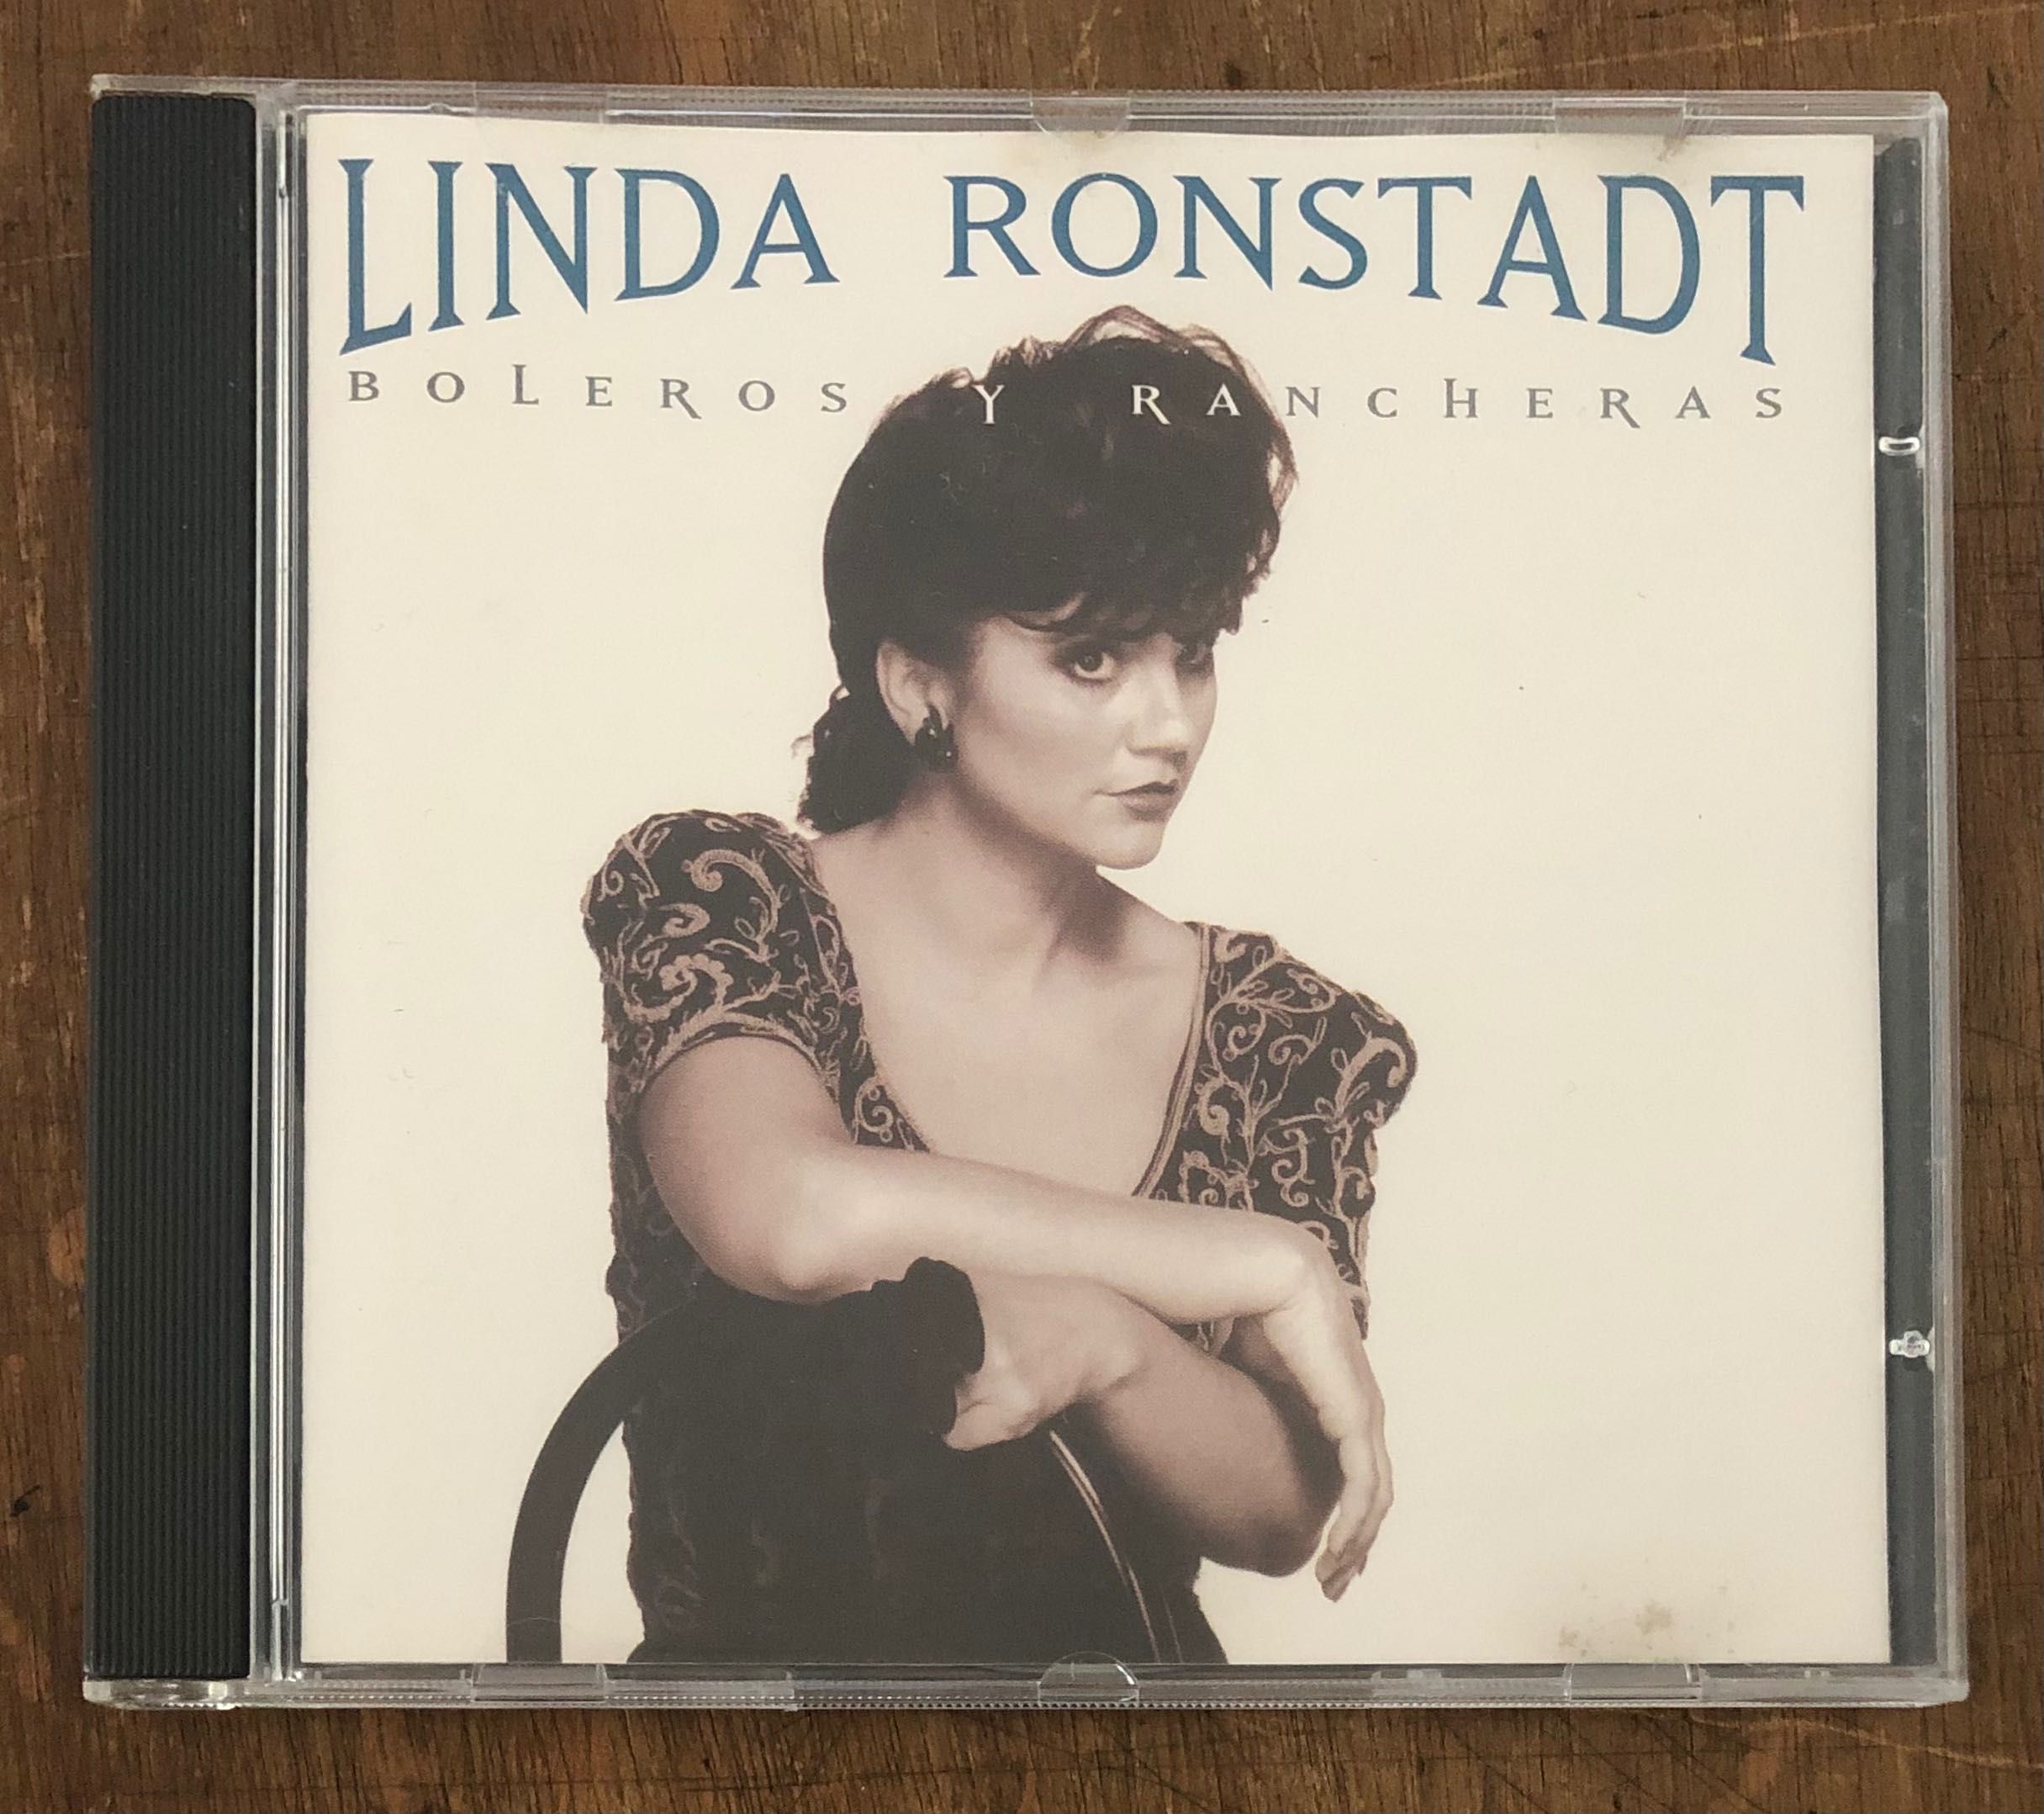 Linda Ronstadt - Boleros y Rancheras